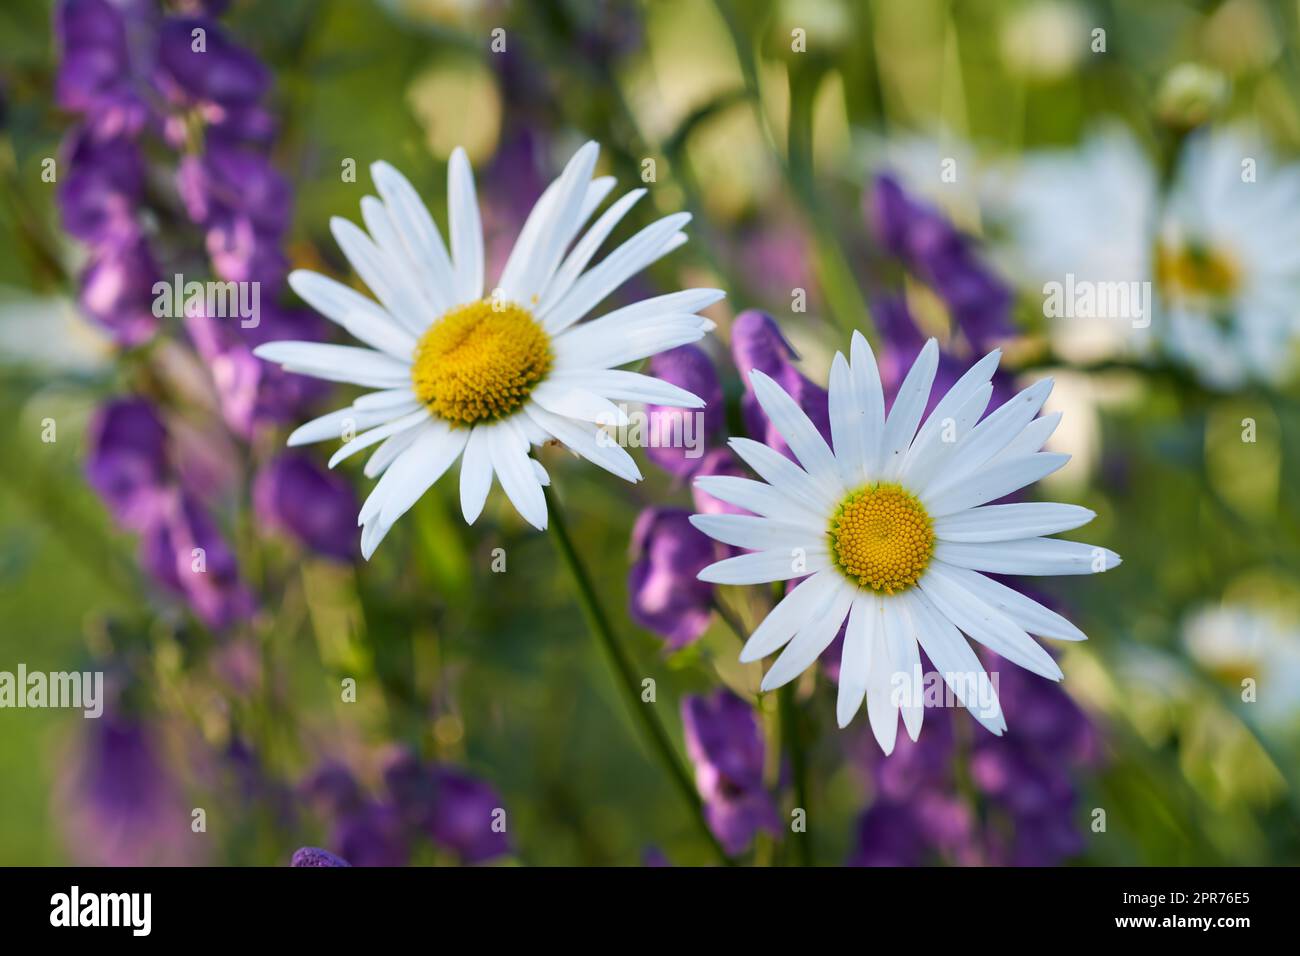 Zwei weiße Gänseblümchen blühen in einem Garten. Blütenköpfe mit gelben Zentren blühen in einem botanischen Garten oder Park an einem sonnigen Tag im Frühling. Marguerit und andere violette Pflanzenarten in der Natur Stockfoto